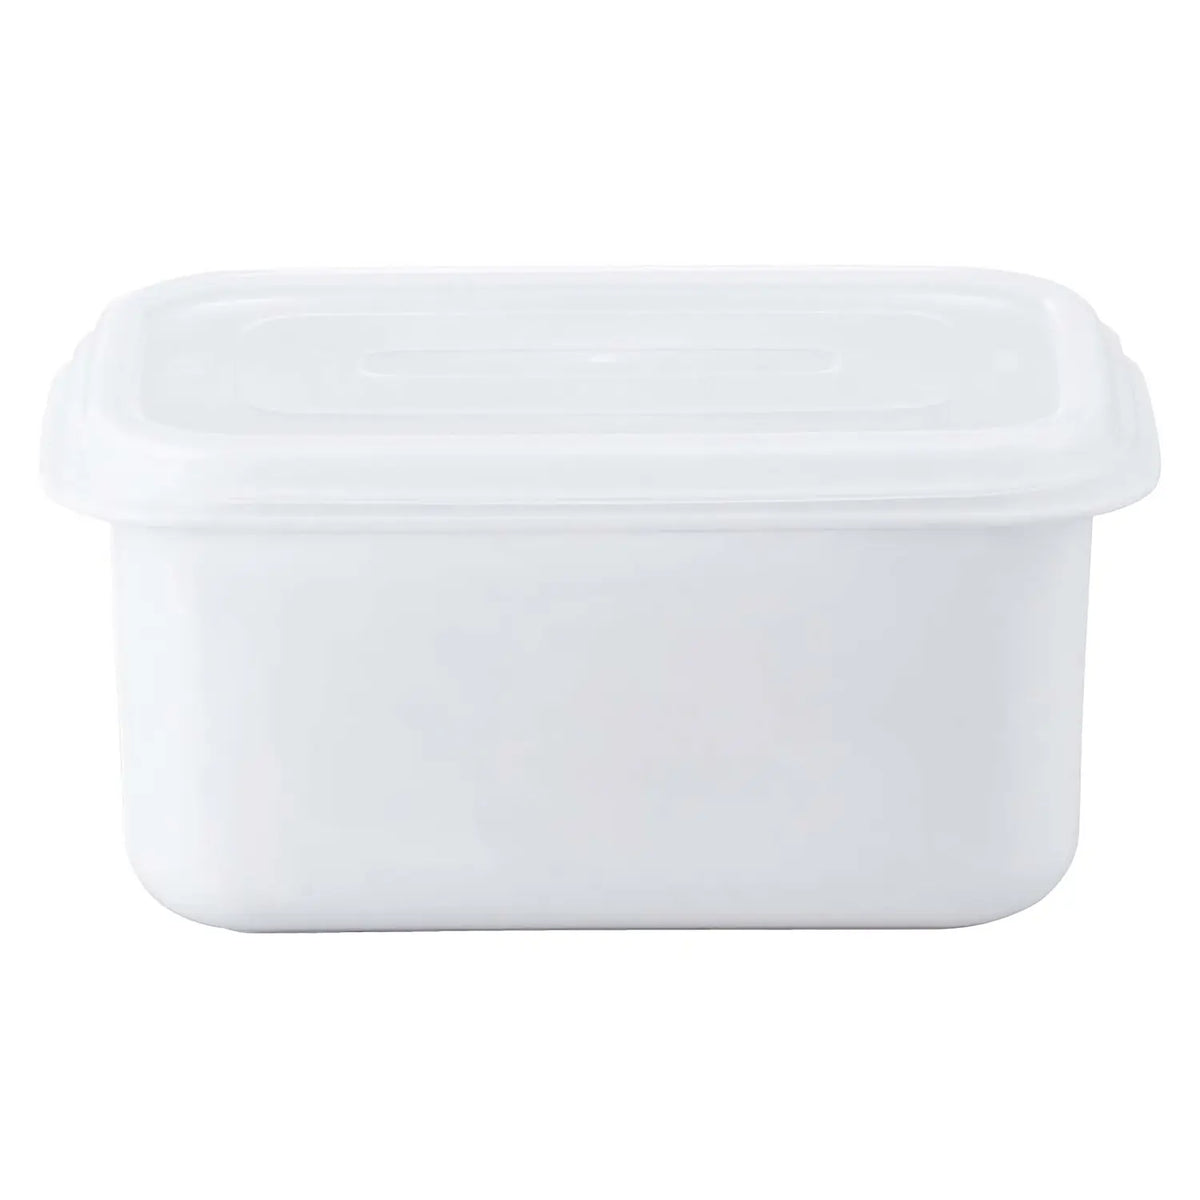 RISU Polyethylene Rectangle Sealed Container White